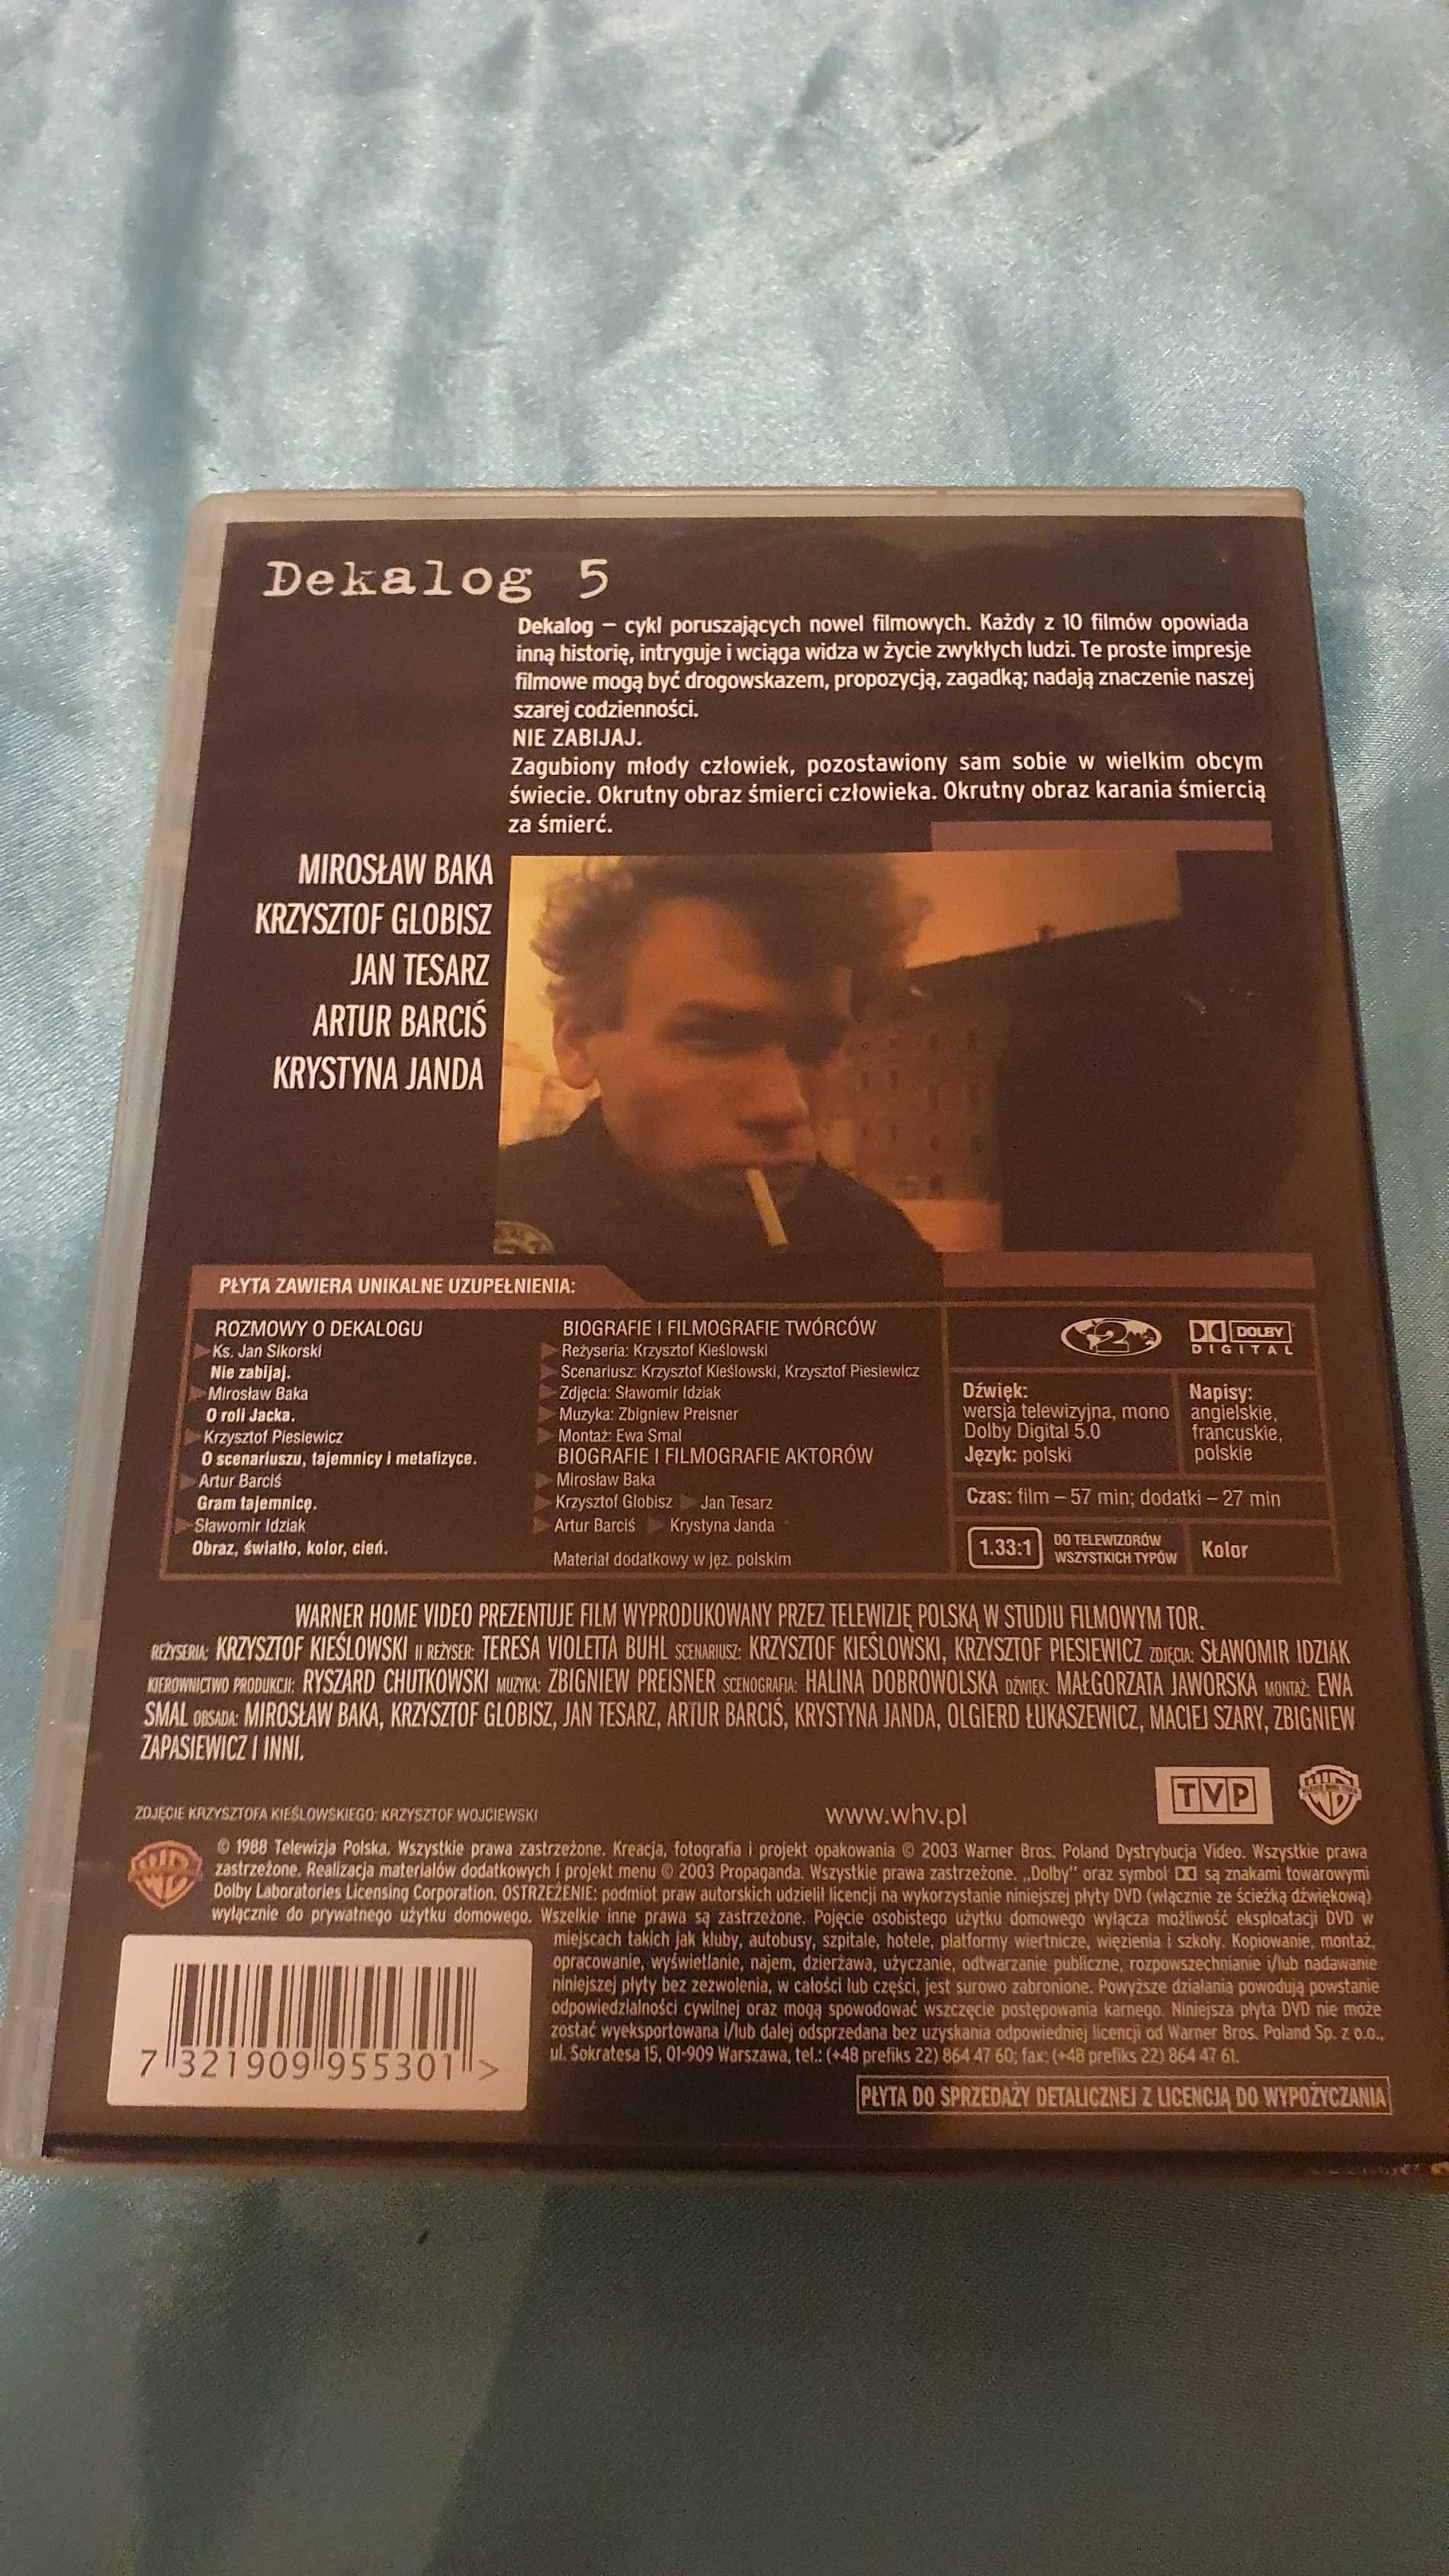 DEKALOG 5   DVD  Krzysztof Kieślowski